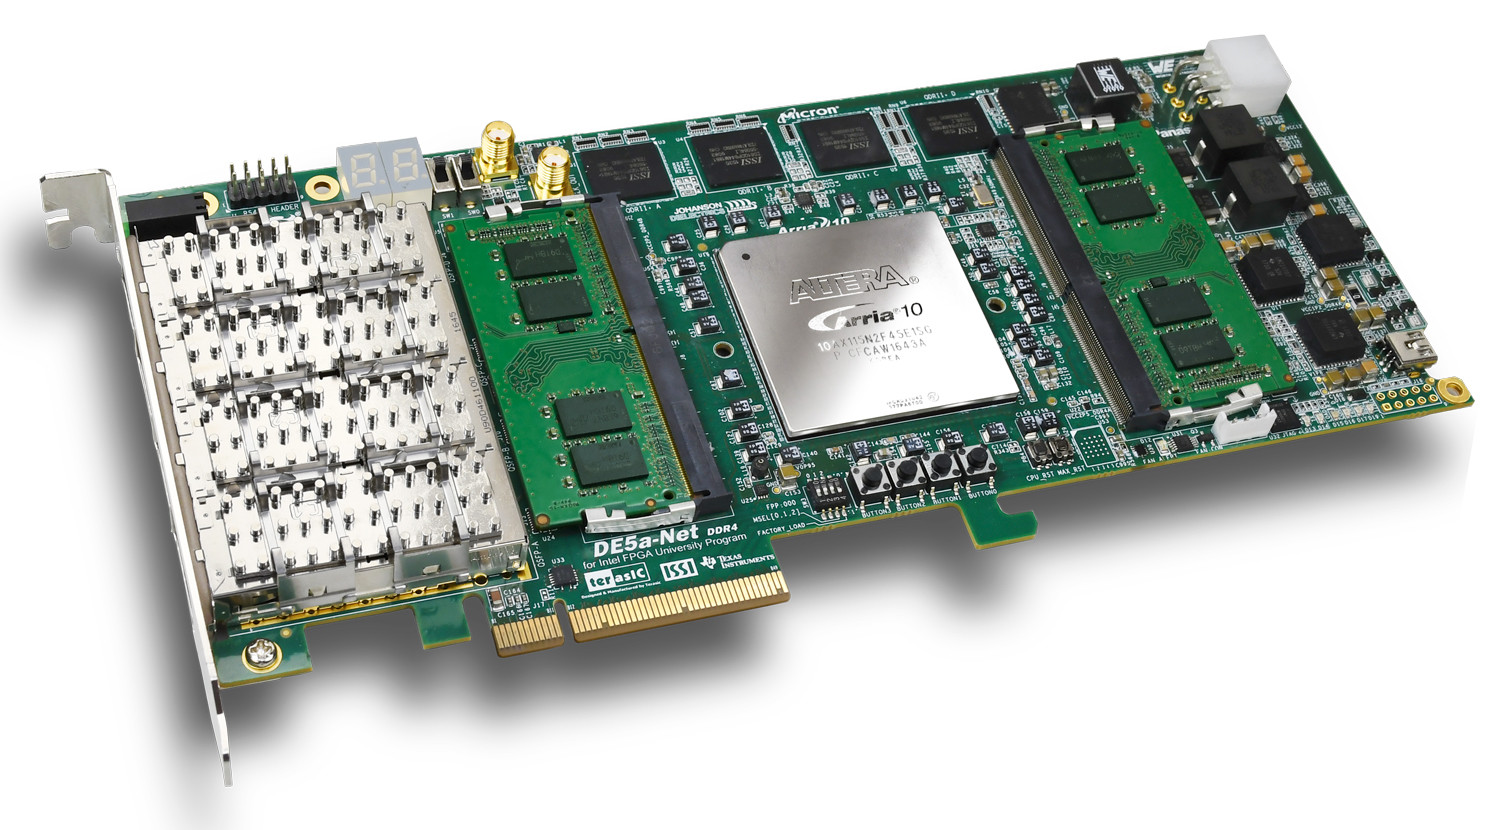 DE5a-Net-DDR4 Board Photo